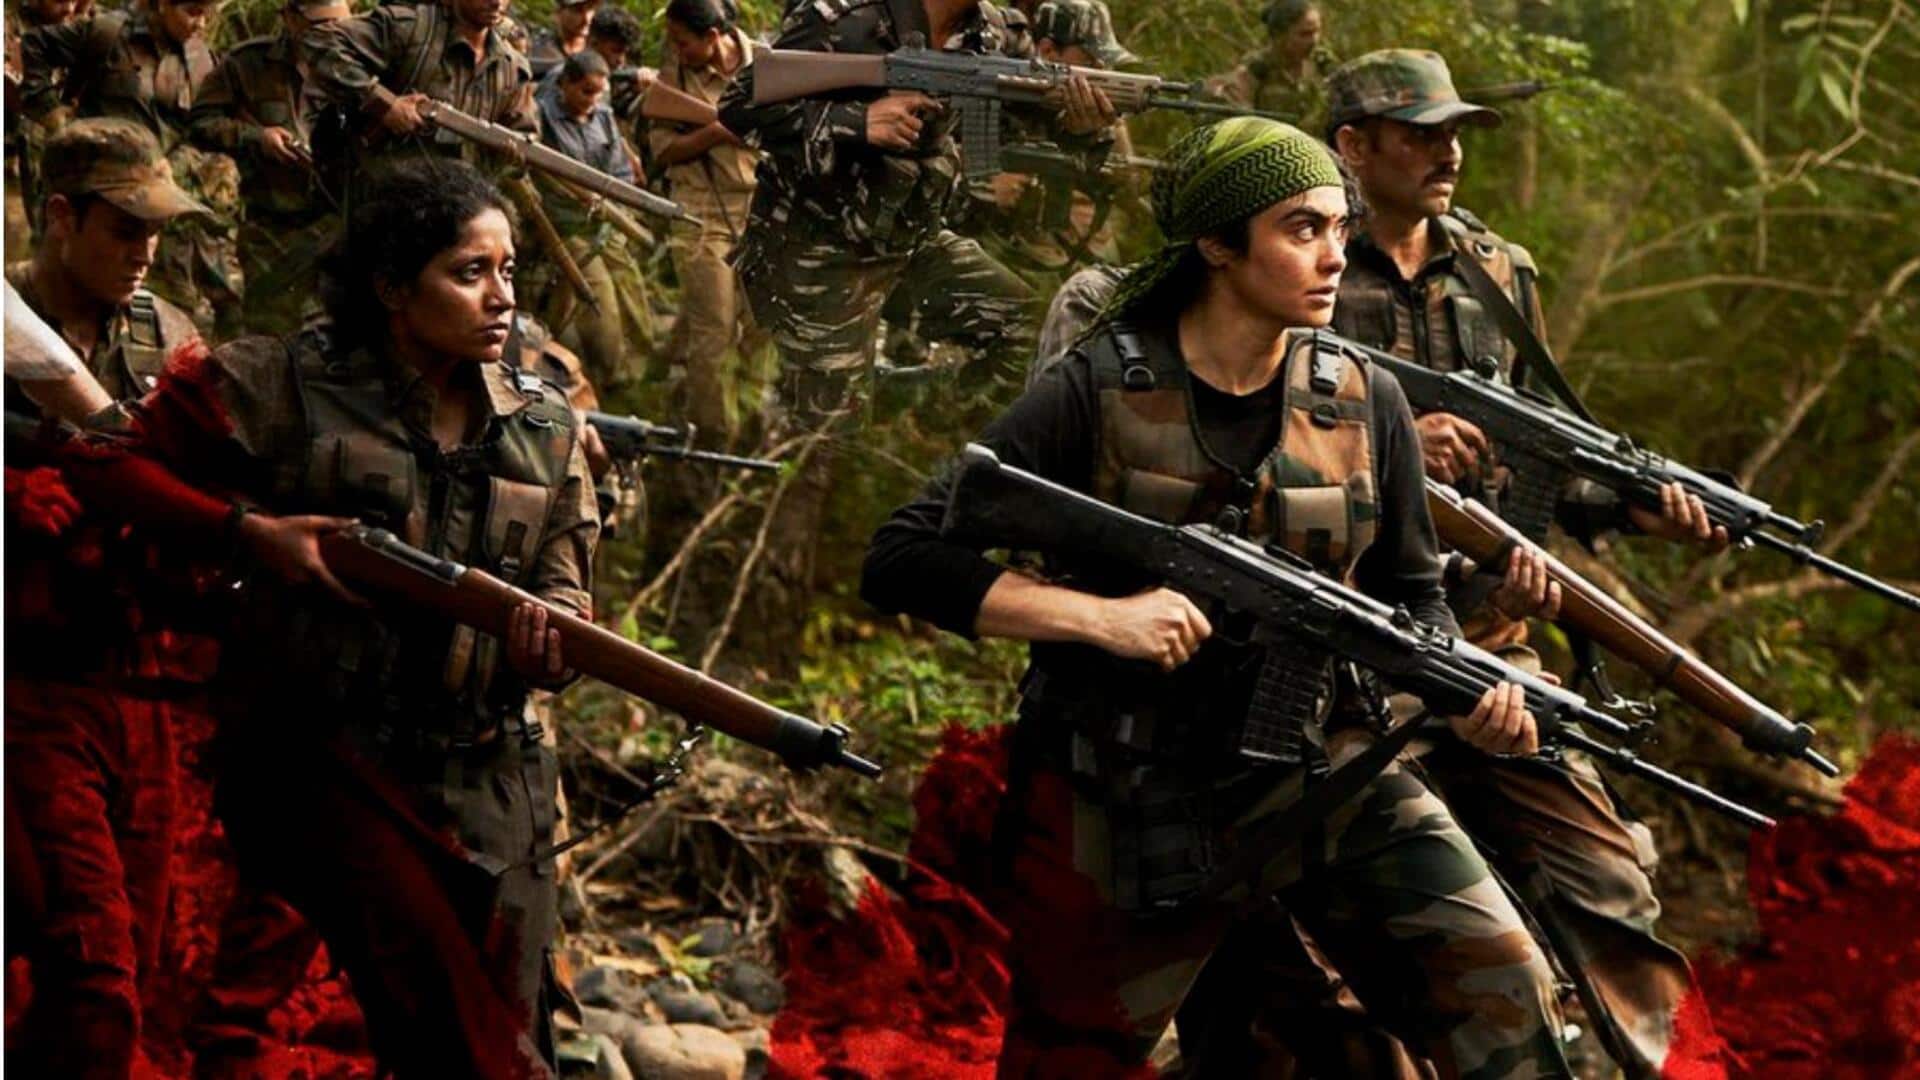 अदा शर्मा की फिल्म 'बस्तर: द नक्सल स्टोरी' OTT प्लेटफॉर्म ZEE5 पर होगी रिलीज, जानिए कब